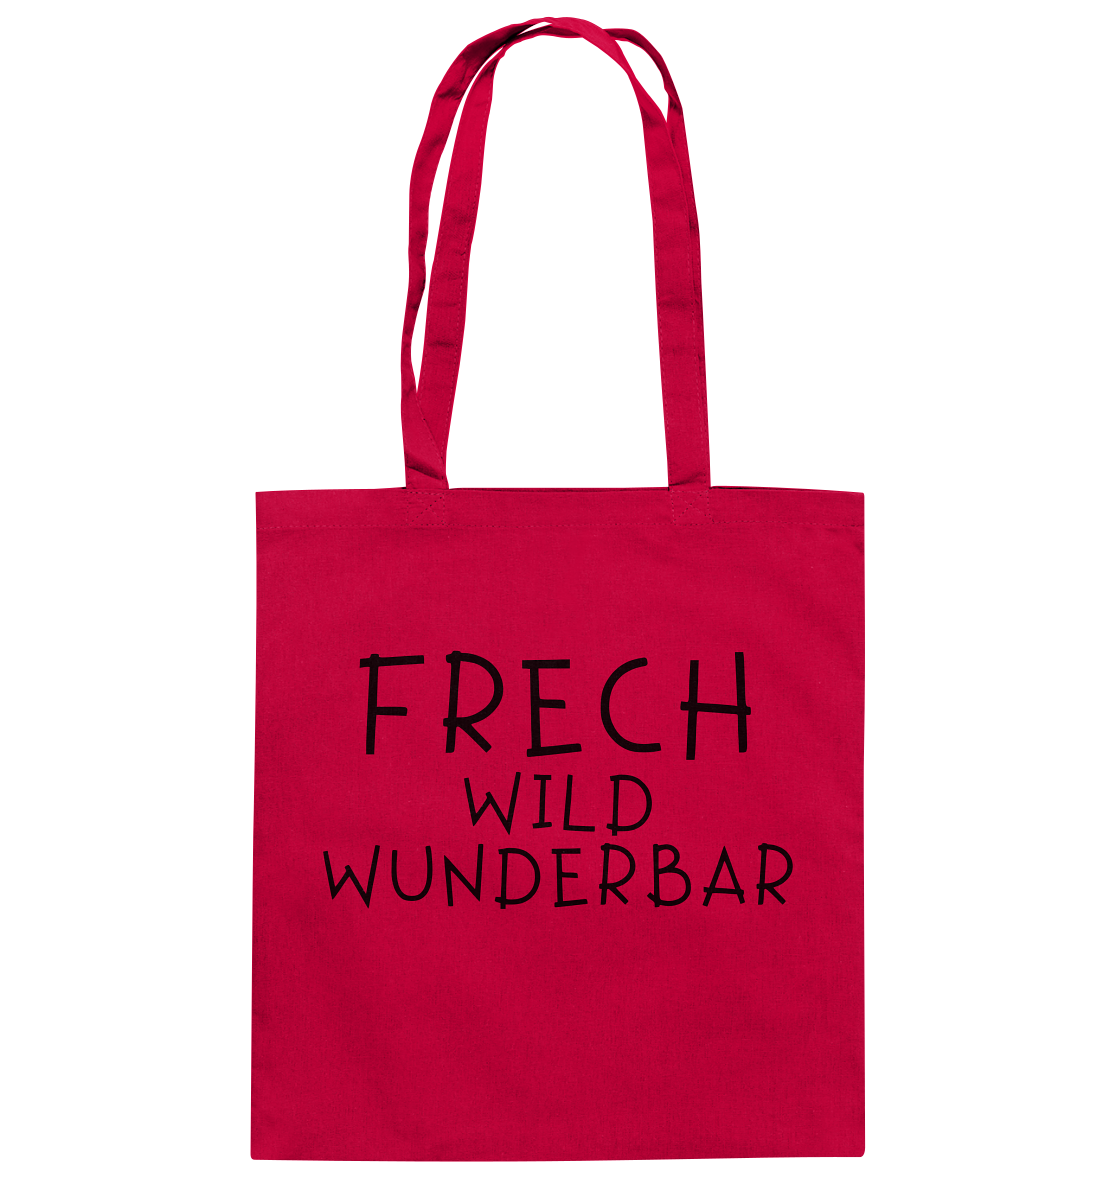 FRECH WILD WUNDERBAR - Baumwolltasche